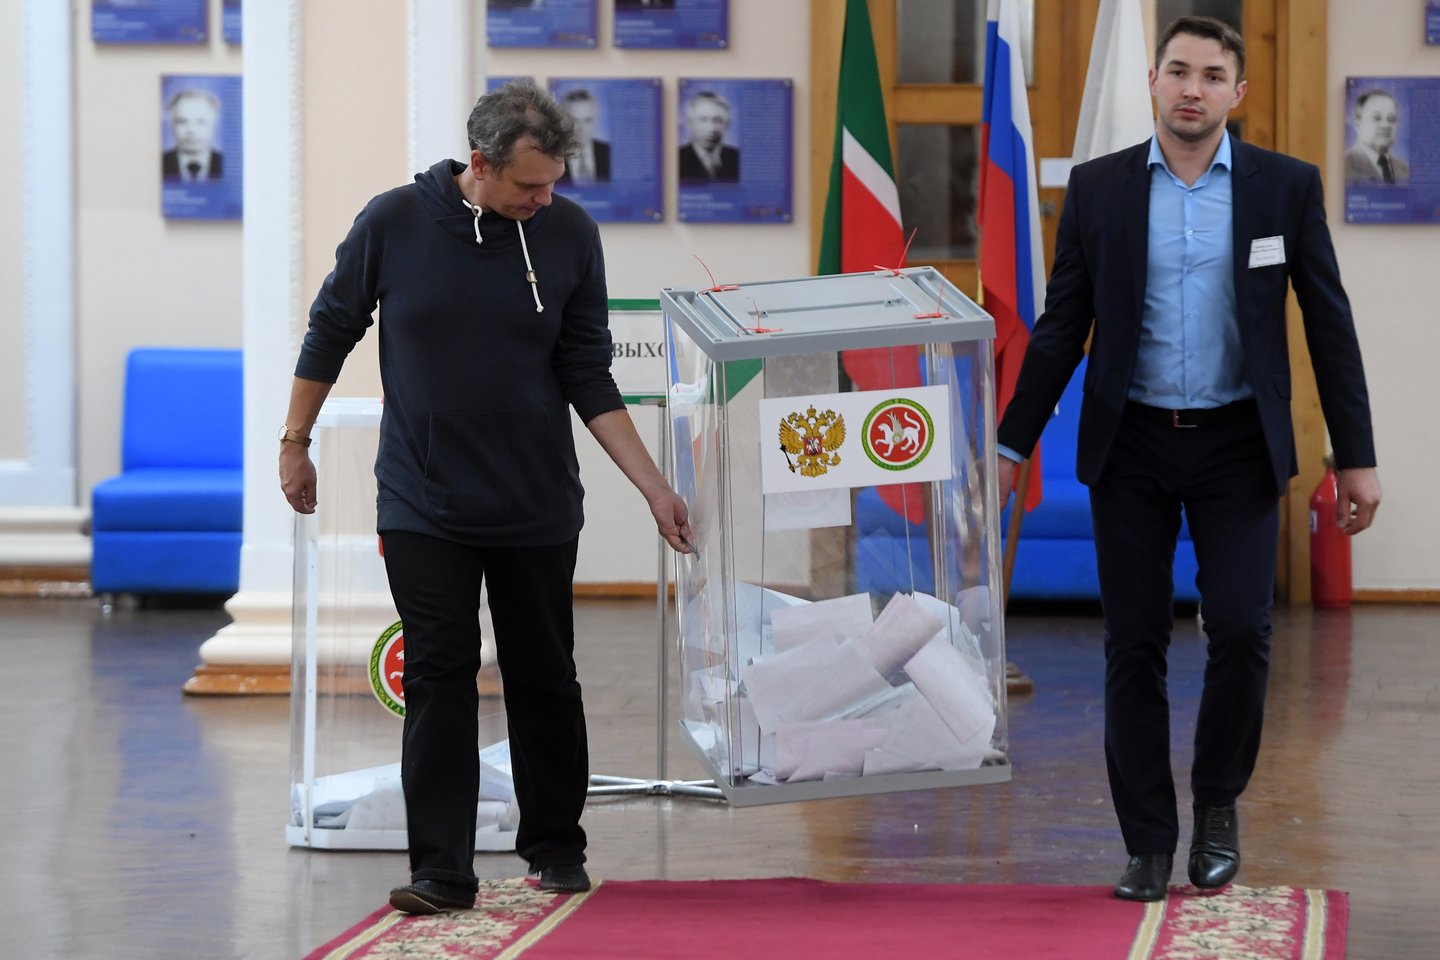  Rusijos valdančioji jėga patyrė nuostolių Maskvoje, bet gubernatorių rinkimuose pirmame ture laimėjo visi Kremliaus palaiminti kandidatai.<br> Sputnik/Scanpix nuotr.